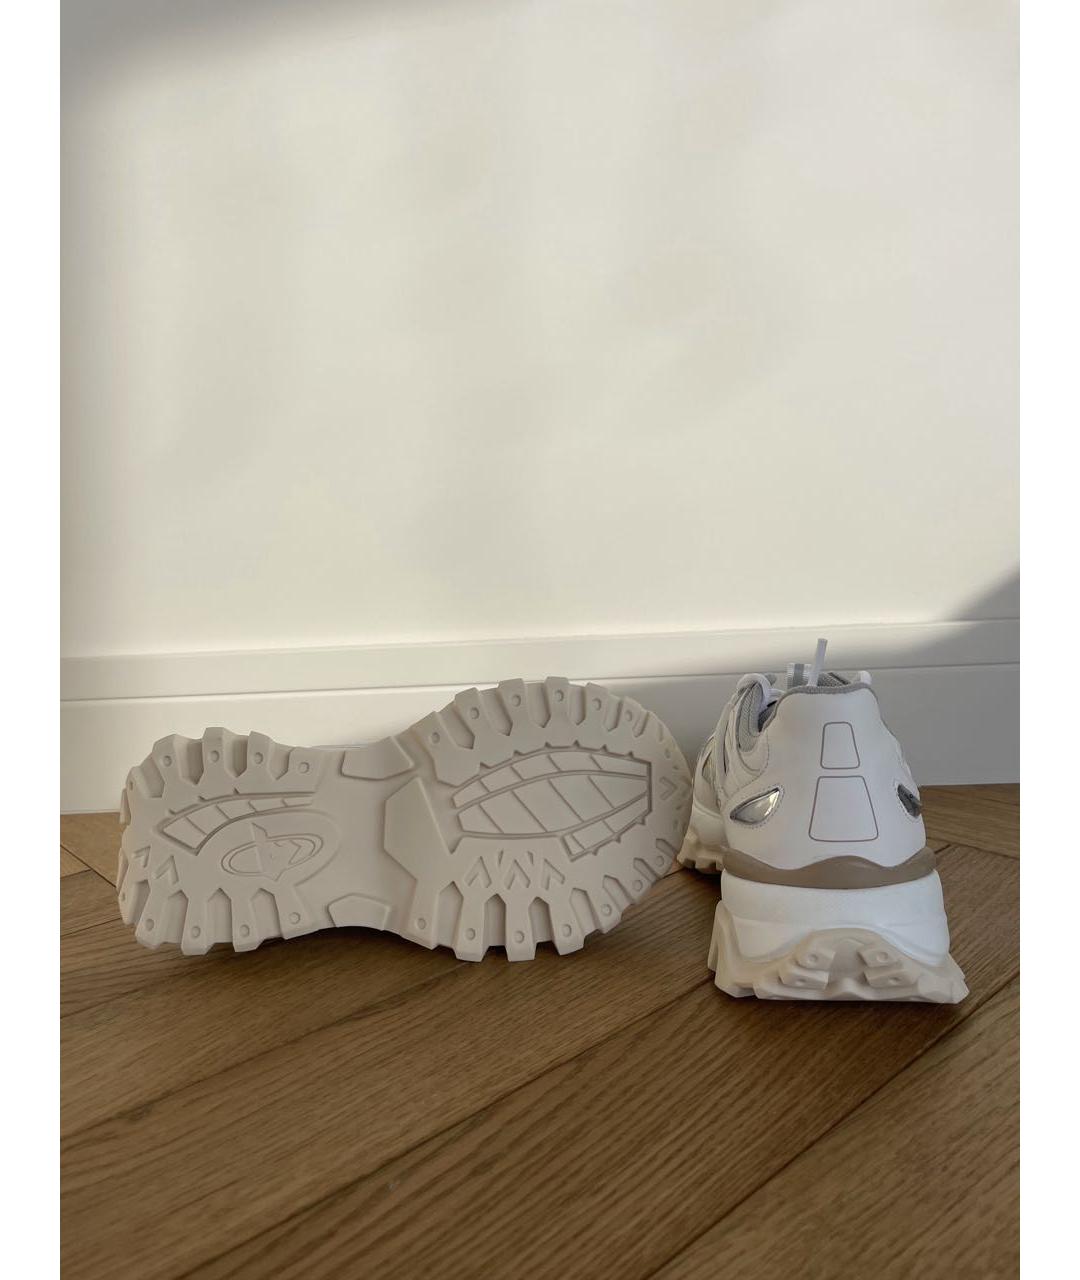 AXEL ARIGATO Белые кожаные кроссовки, фото 5